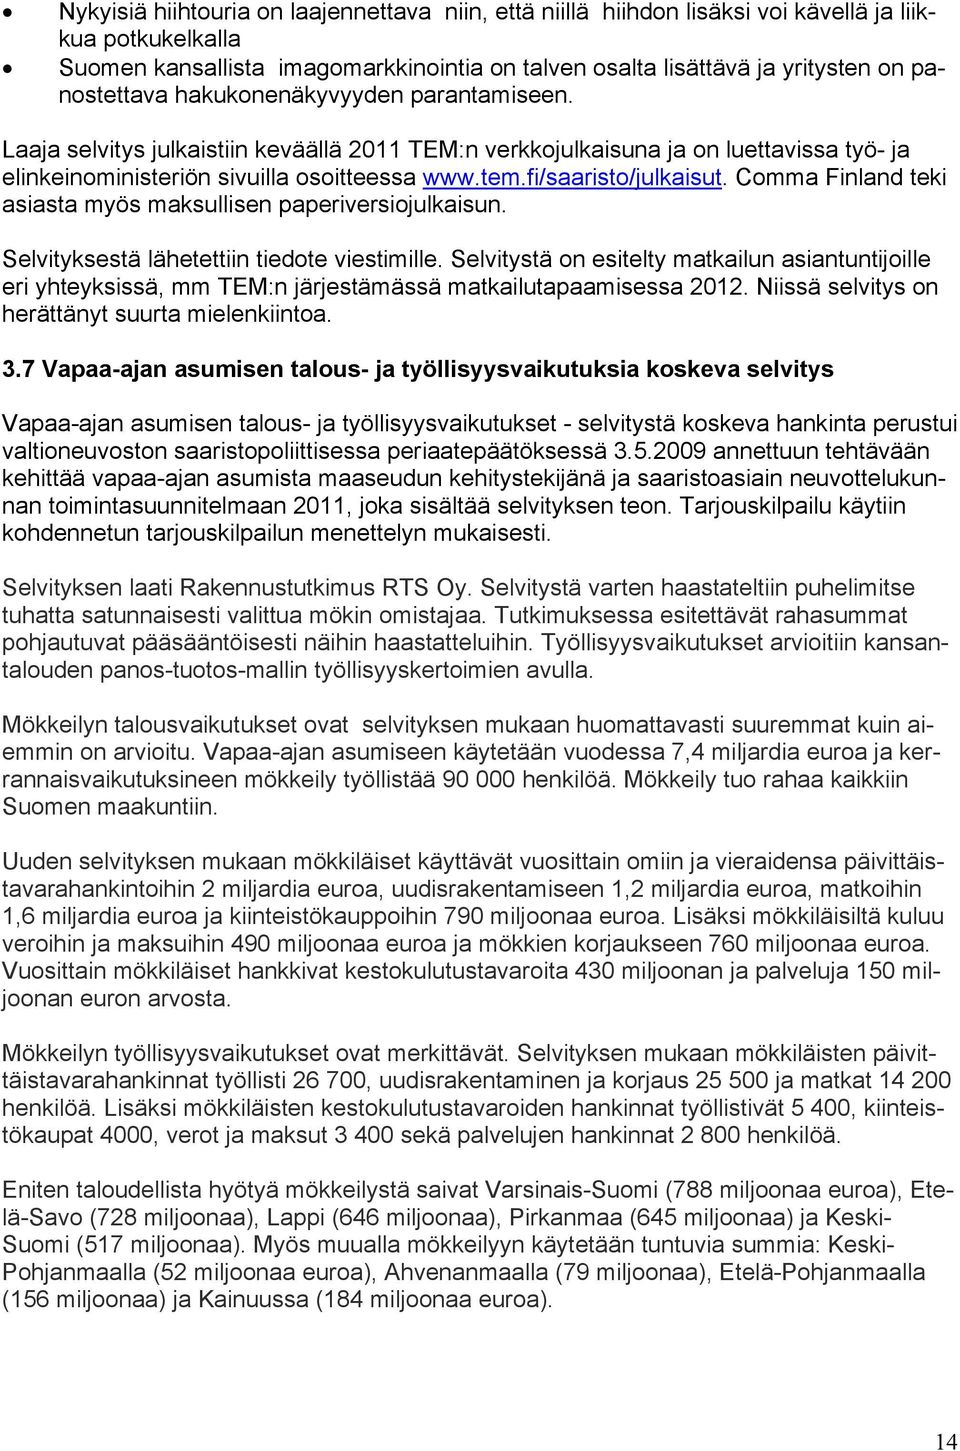 fi/saaristo/julkaisut. Comma Finland teki asiasta myös maksullisen paperiversiojulkaisun. Selvityksestä lähetettiin tiedote viestimille.